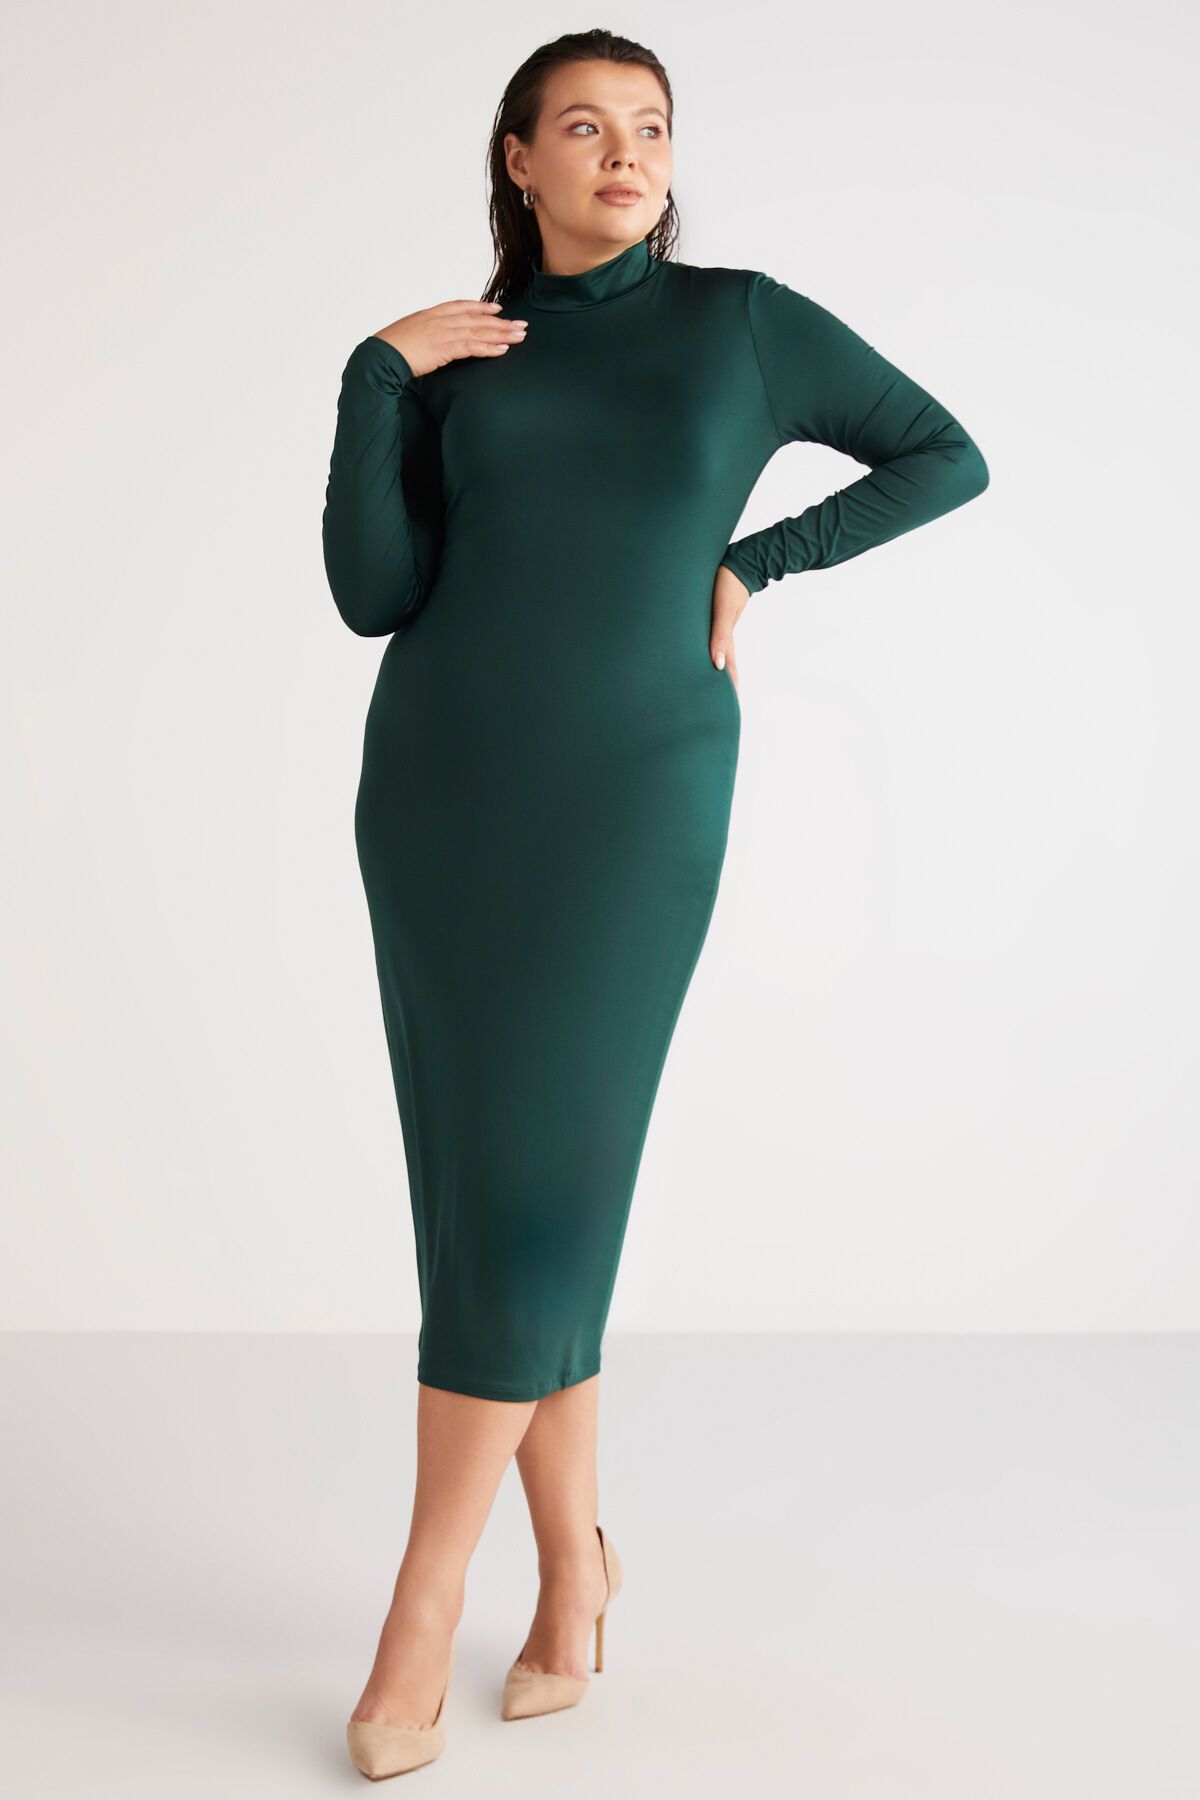 ETHIQUET Katjabb Kadın Vücudu Tamamen Saran Slim Fit Dik Yaka Midi Boy Yeşil Büyük Beden Elbise